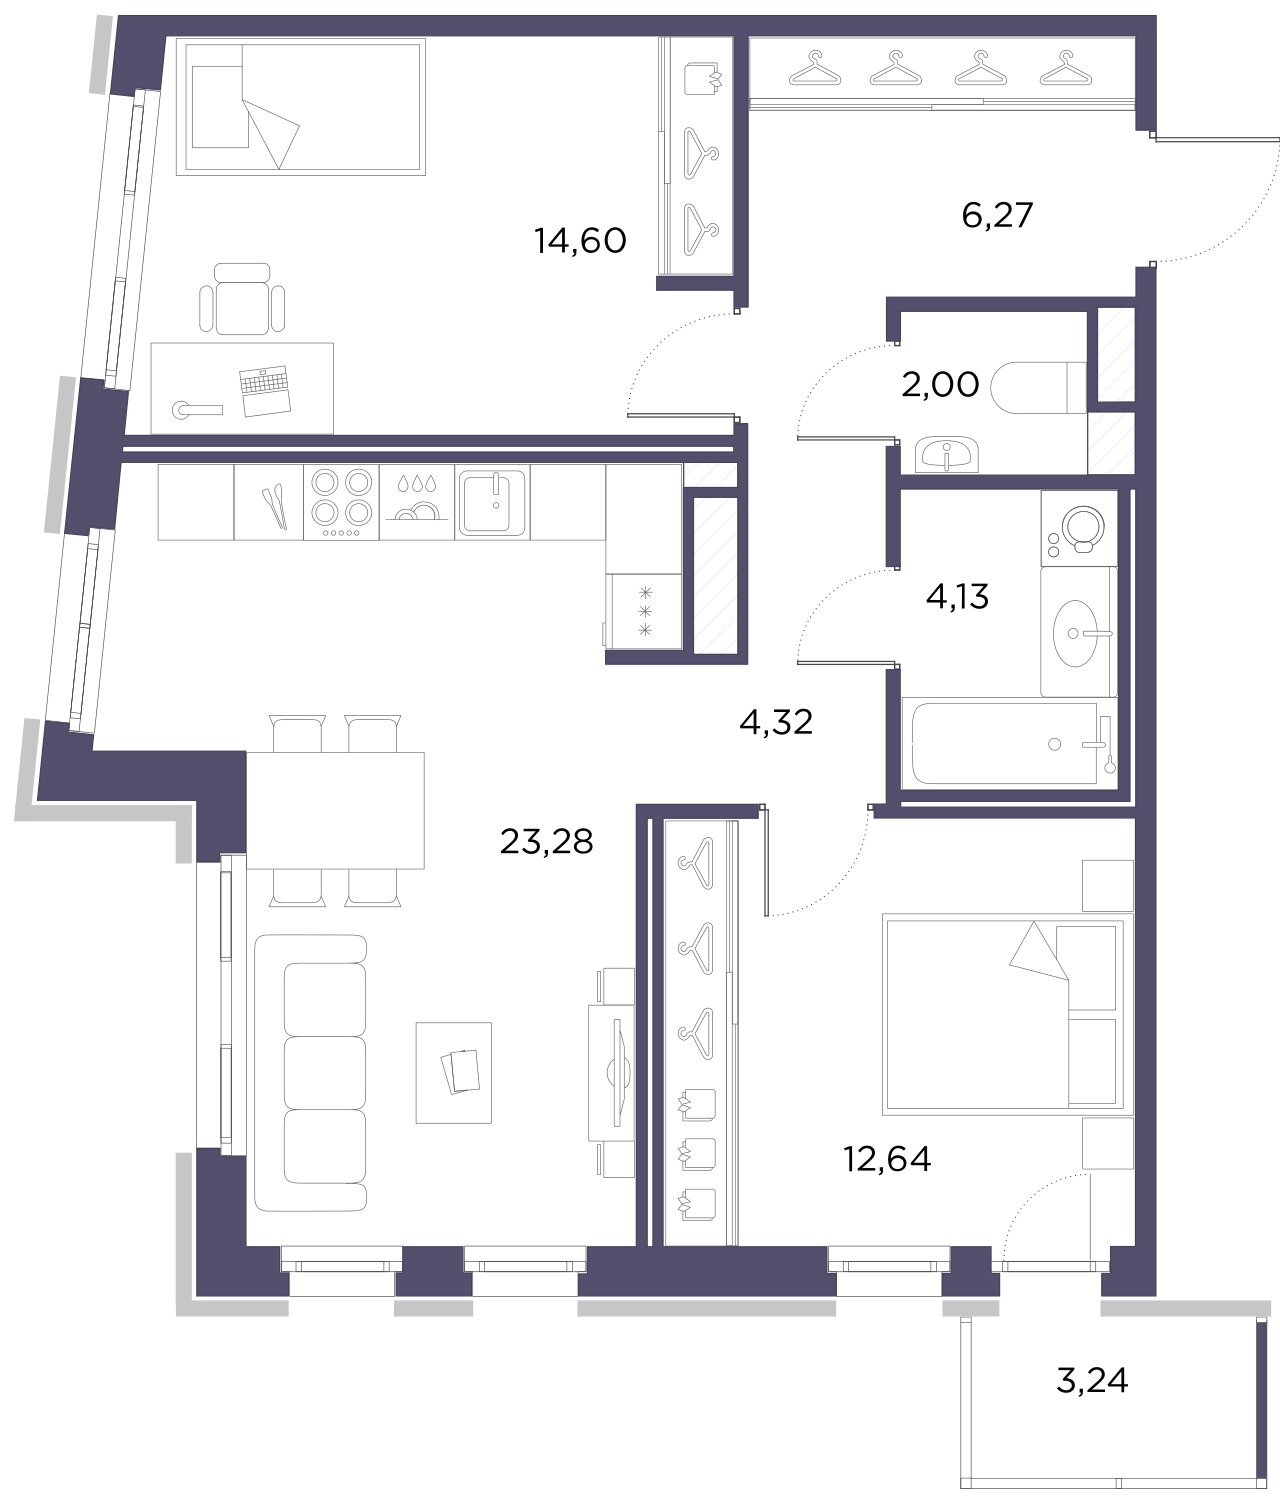 2-комнатная квартира, 67.24 м²; этаж: 8 - купить в Санкт-Петербурге